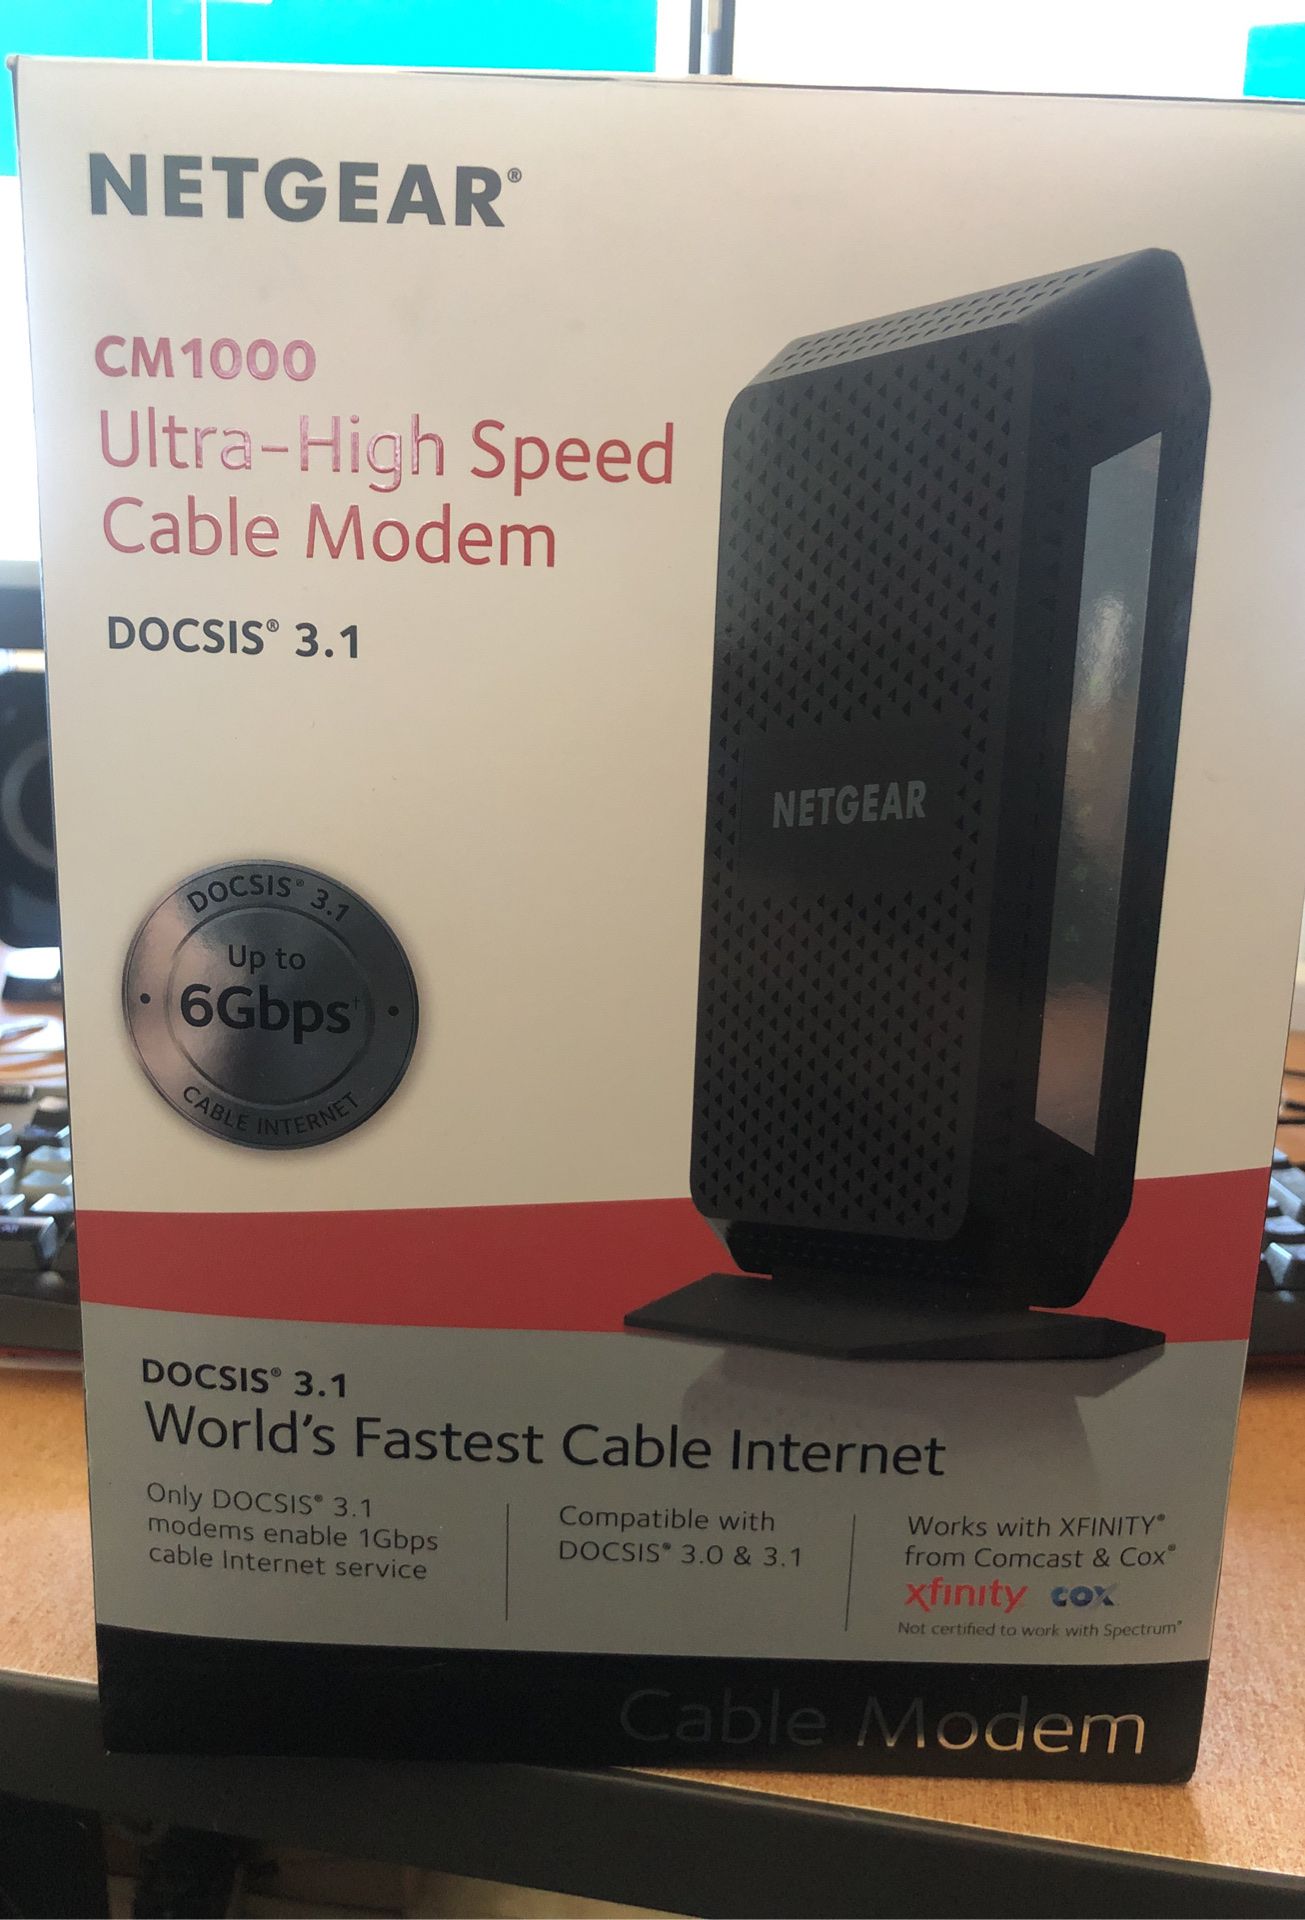 Netgear CM1000 Docsis 3.1 cable modem